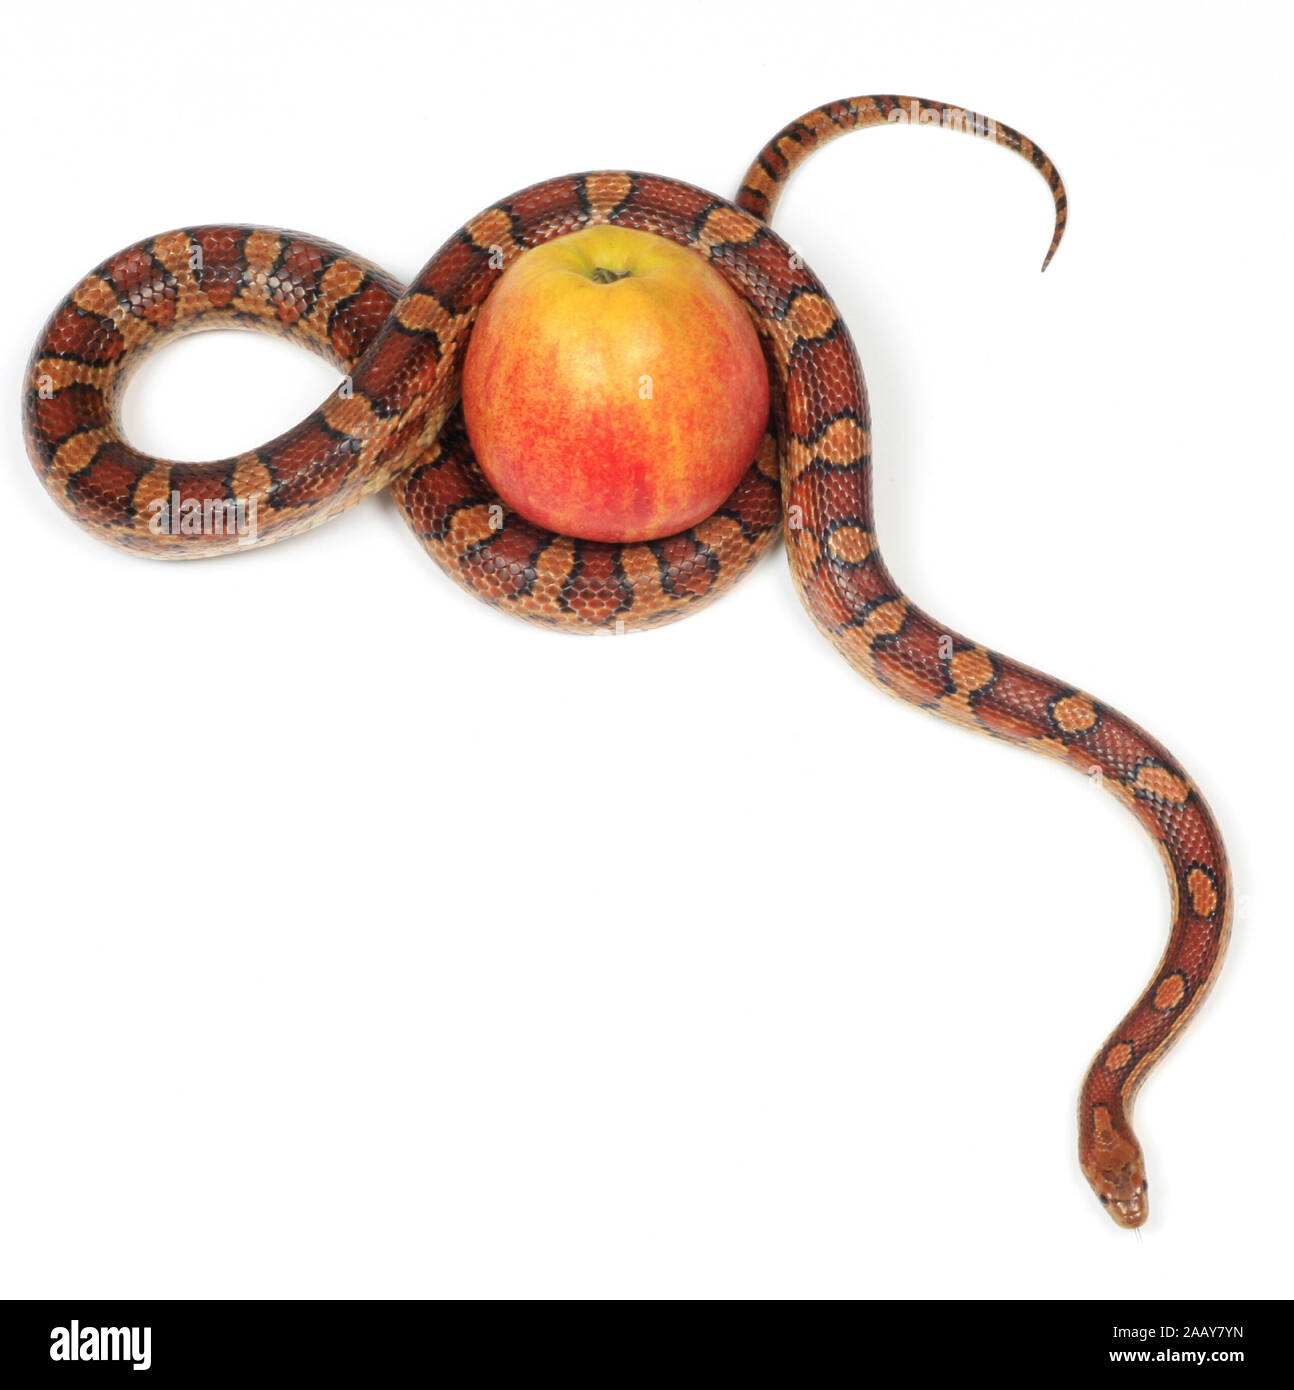 Kornnatter (Elaphe guttata), mit Apfel | corn snake (Elaphe guttata), with apple | BLWS027819.jpg [ (c) blickwinkel/fotototo Tel. +49 (0)2302-2793220, Stock Photo